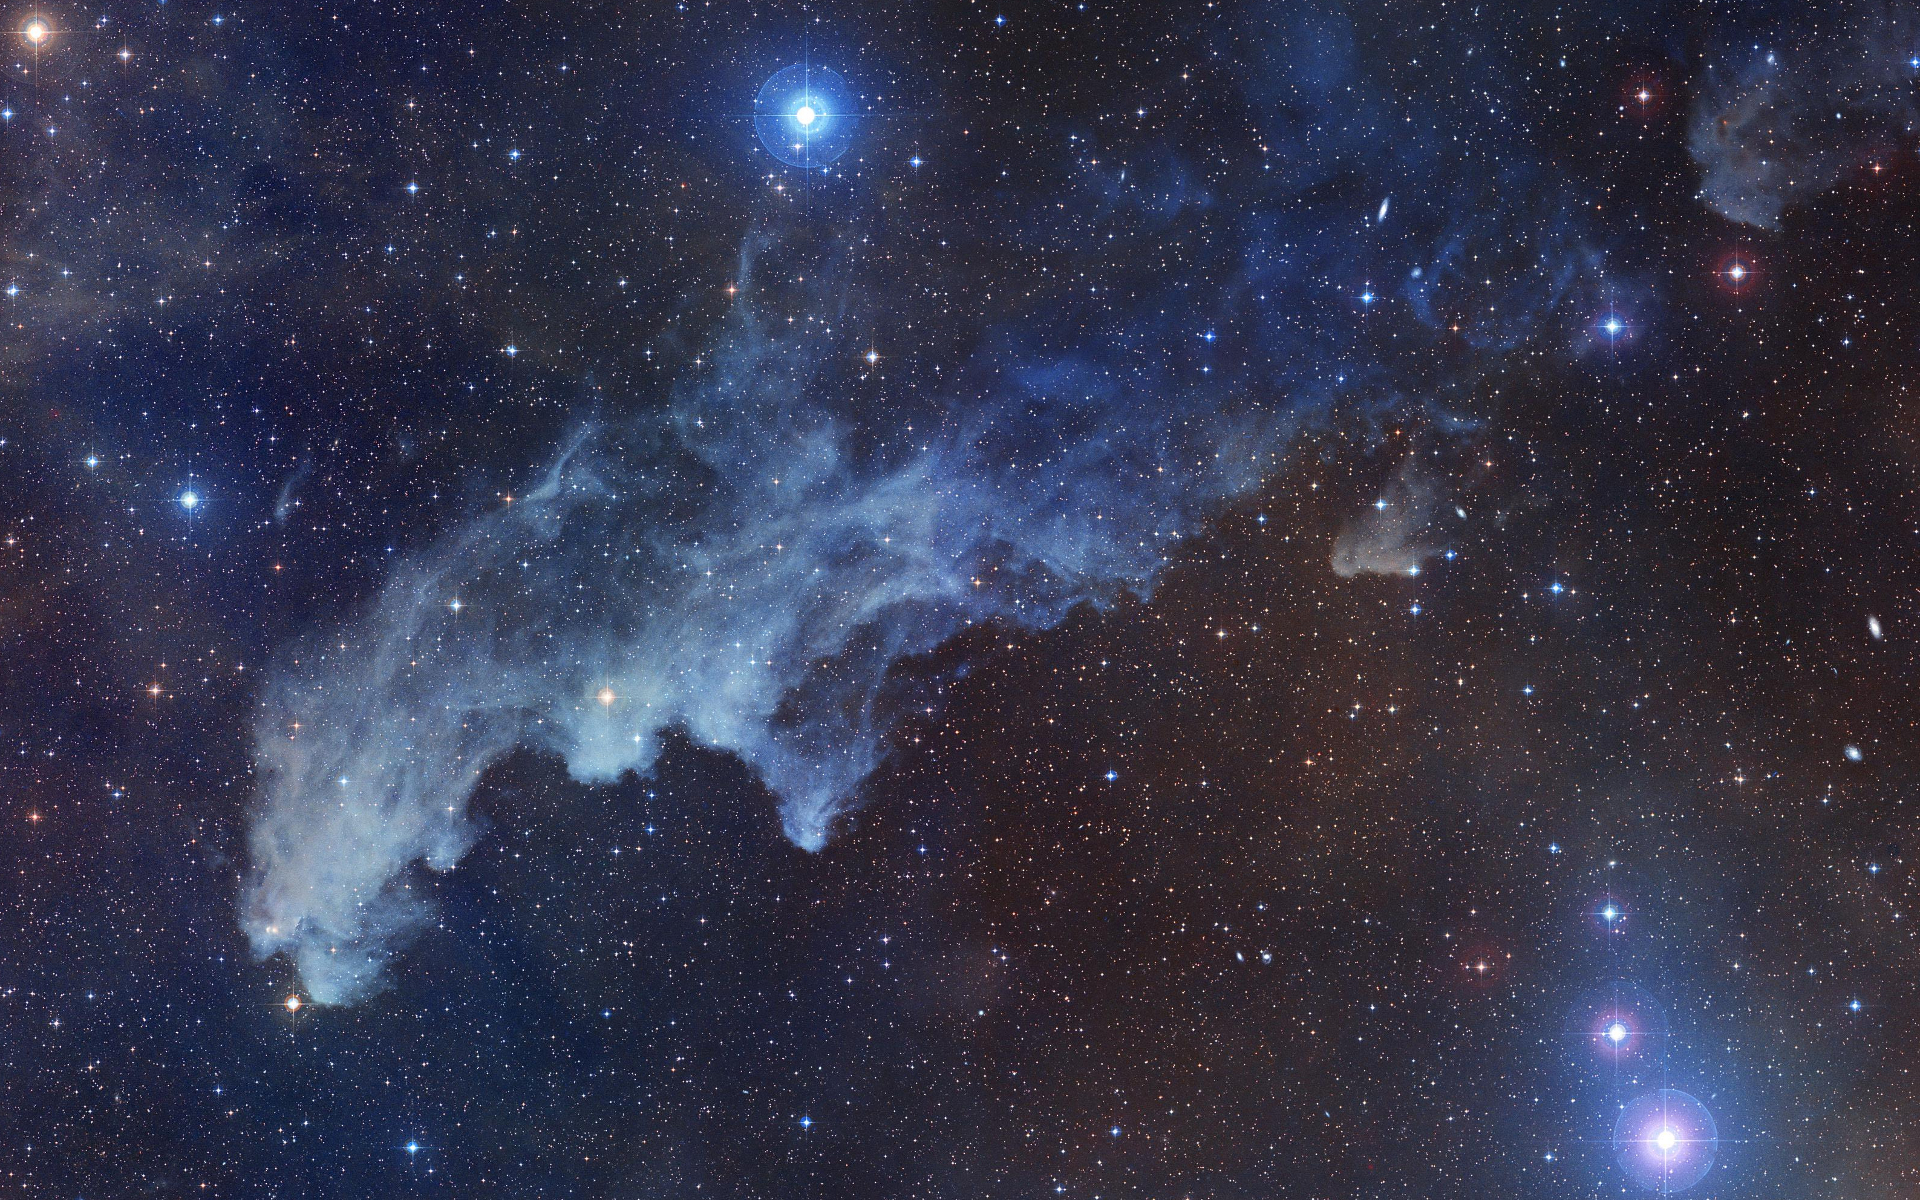 The Carina Nebula Dark Clouds Of Witch Head